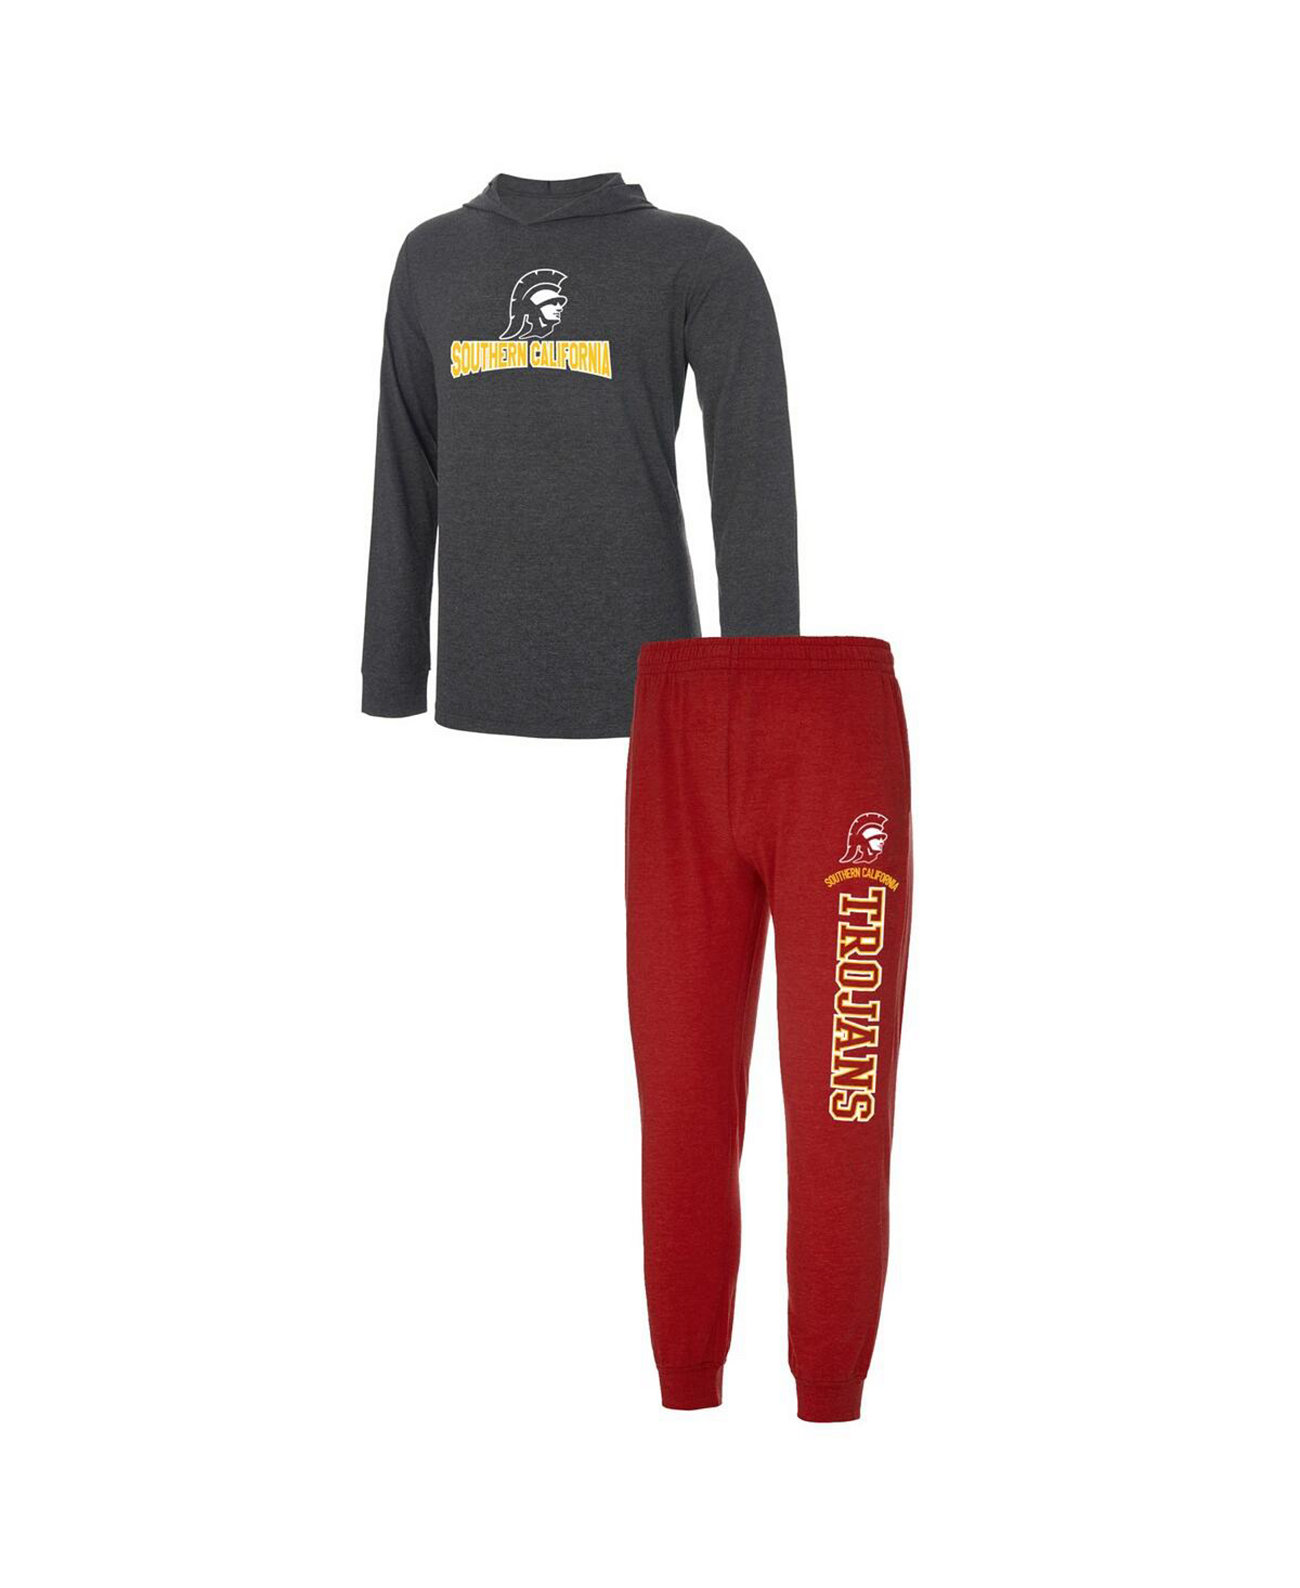 Мужской пуловер с капюшоном Cardinal, темно-серый USC Trojans Meter и комплект для сна для джоггеров Concepts Sport